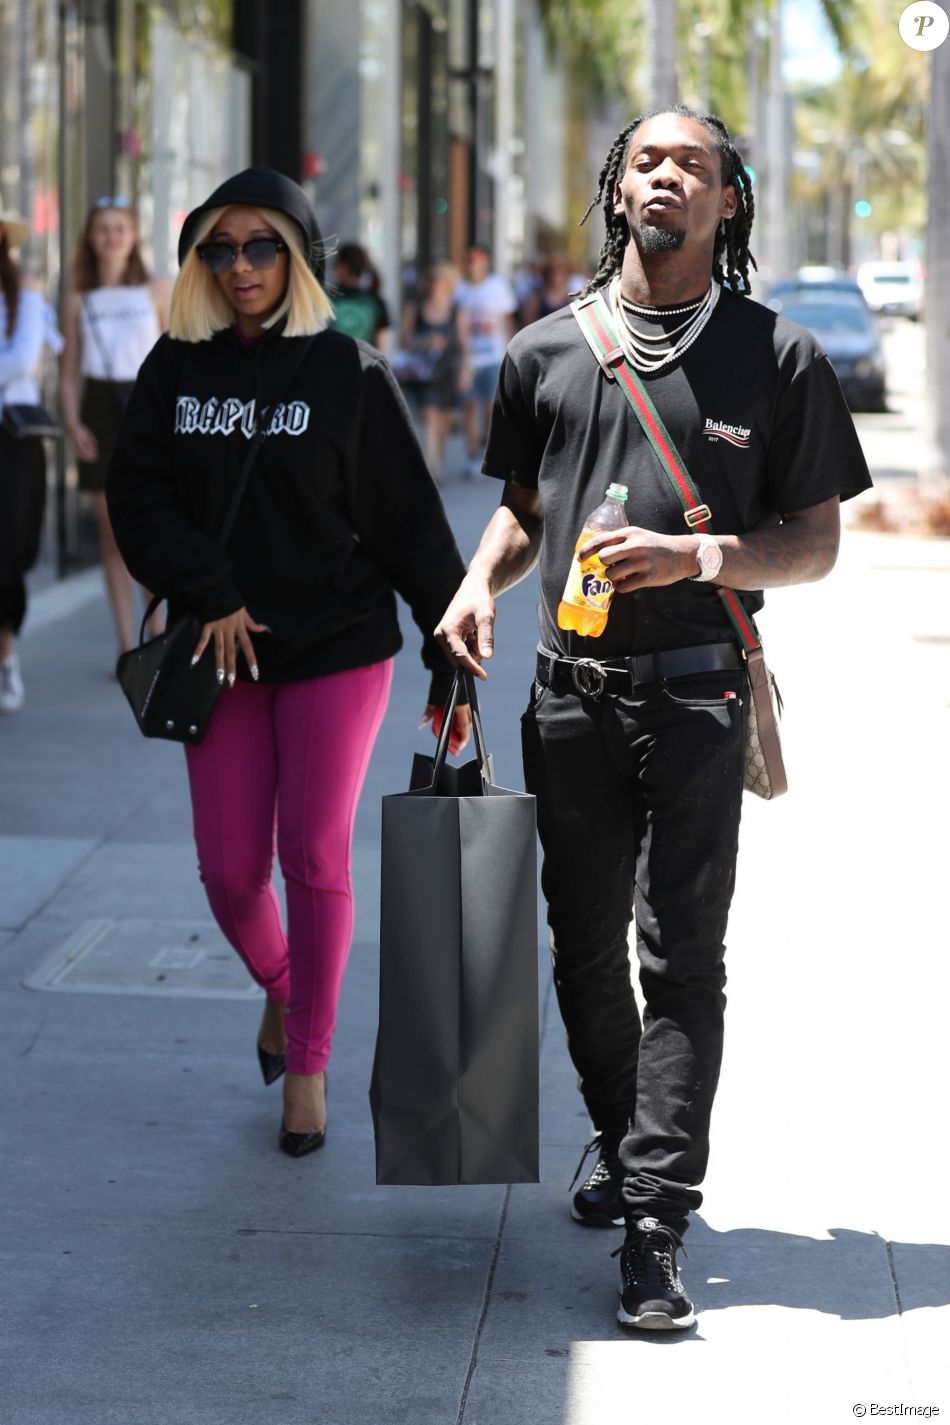 Offset du groupe Migos et Cardi B vont faire du shopping sur Rodeo Drive, à Beverly Hills, le 27 juin 2017.